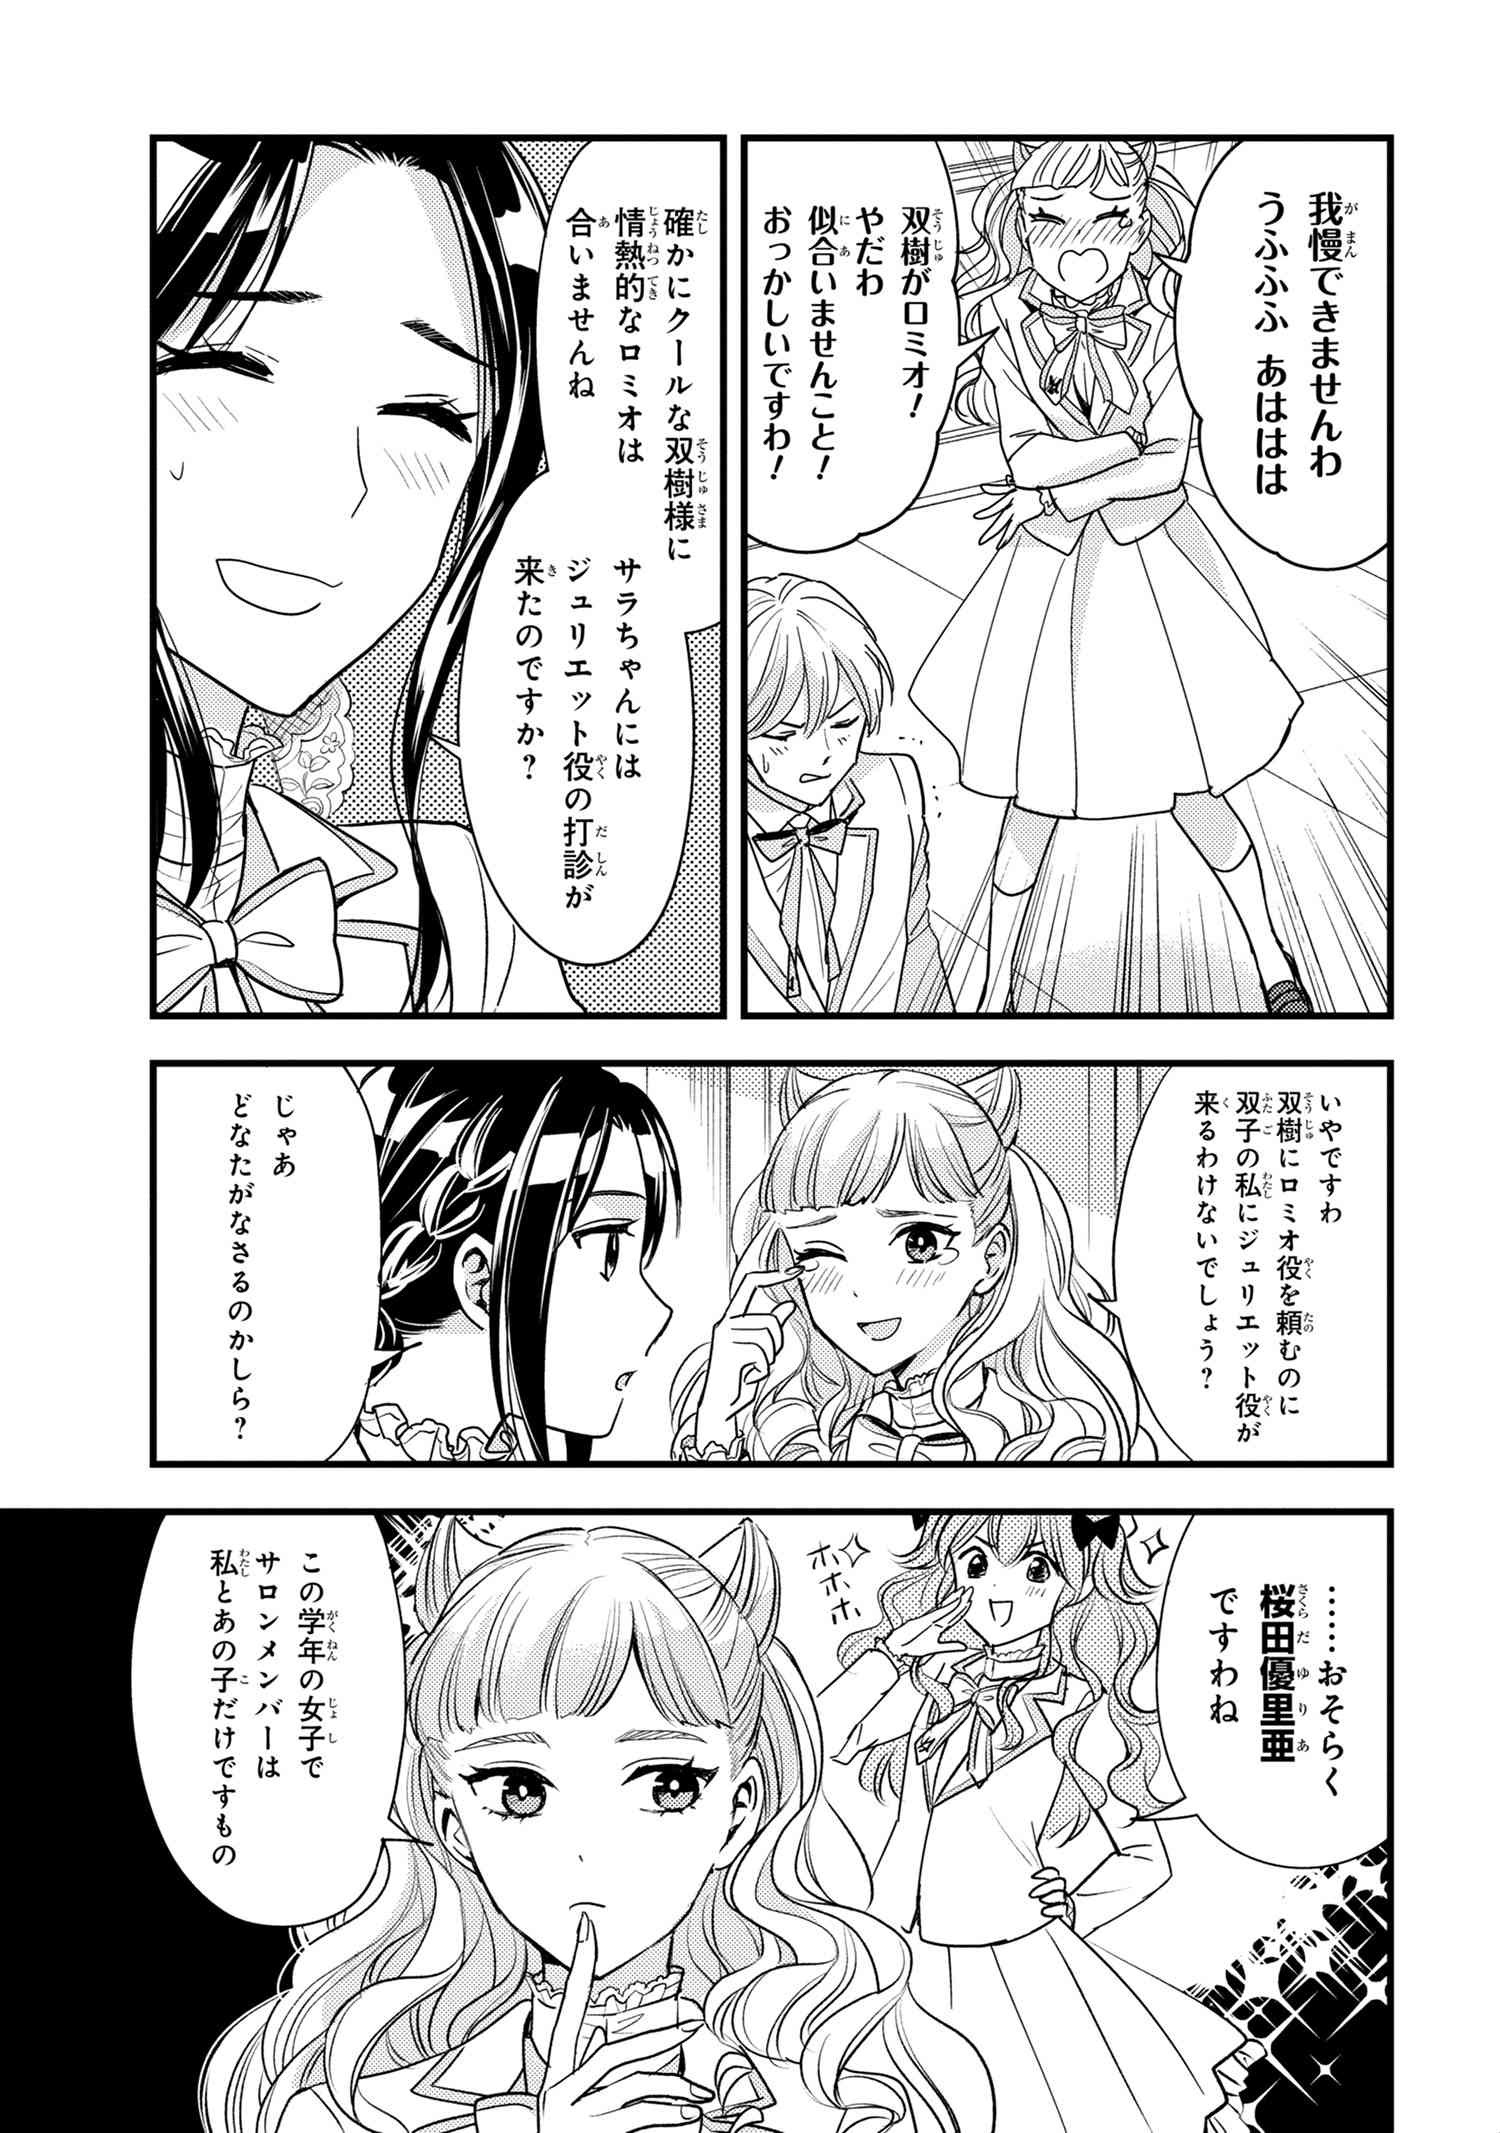 Reiko no Fuugi Akuyaku Reijou to Yobarete imasu ga, tada no Binbou Musume desu - Chapter 15-5 - Page 3